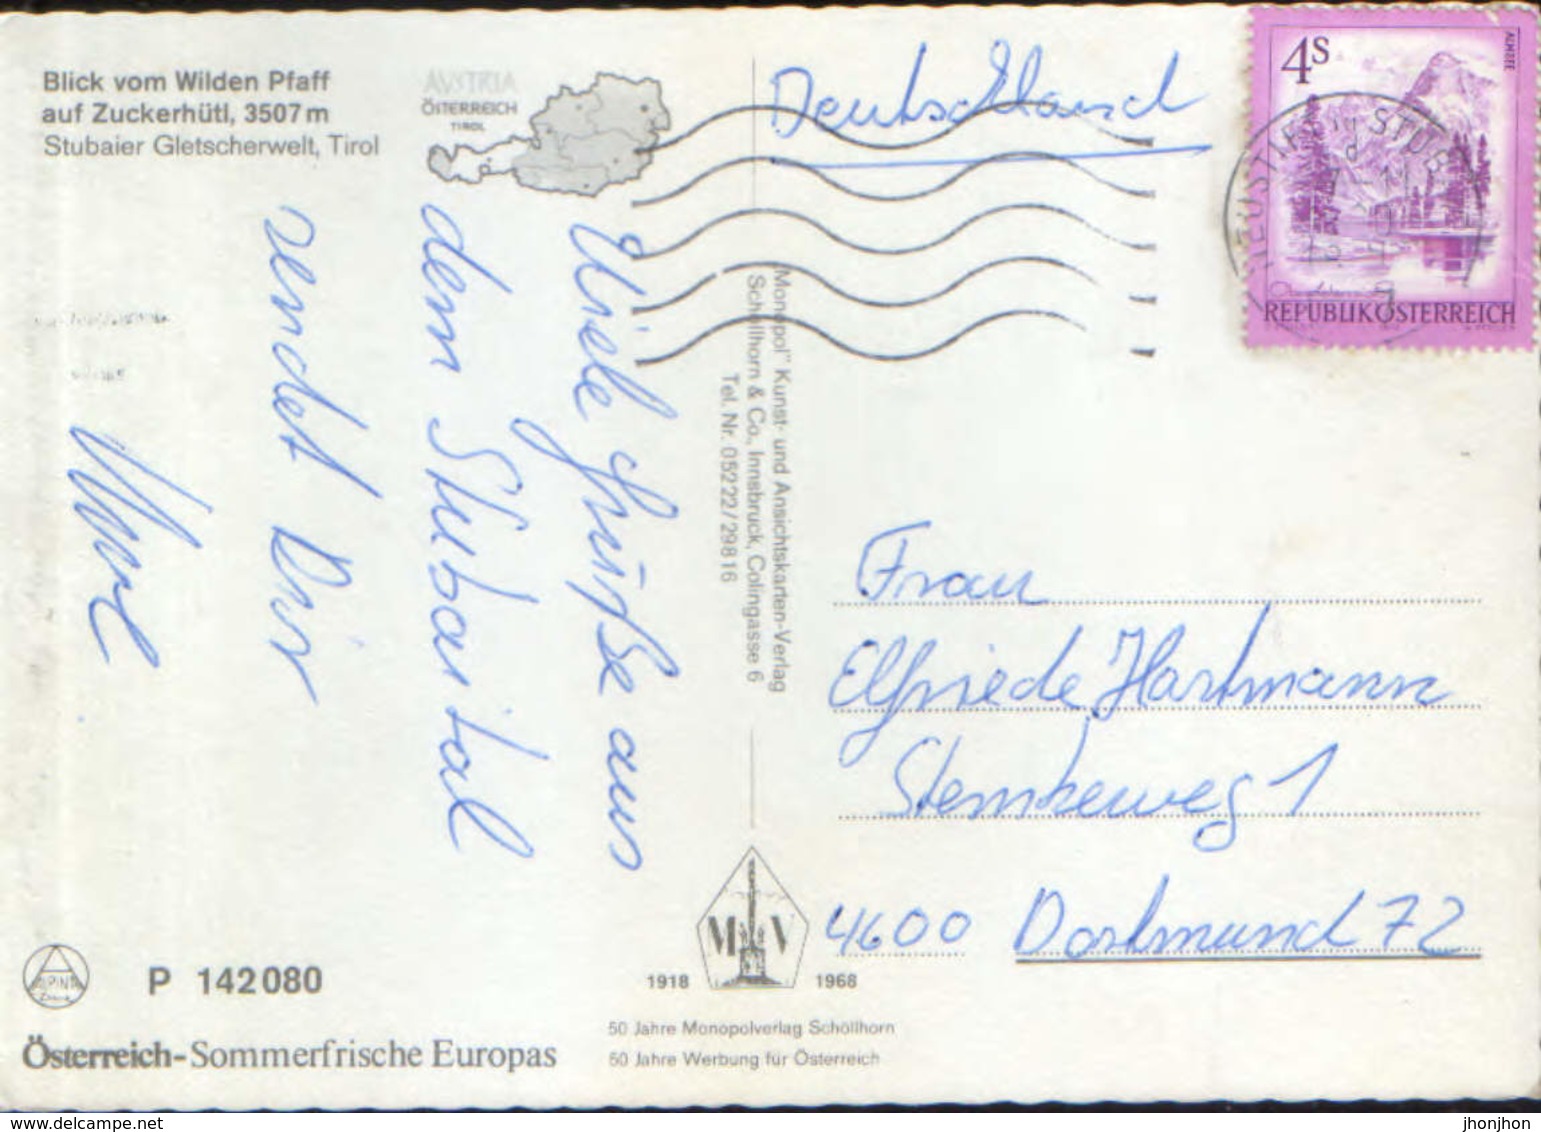 Osterreich - Postcard Circulated In 1980 -  Stubaital - View From The Wilden Pfaff On Zuckerhütl  - 2/scans - Neustift Im Stubaital